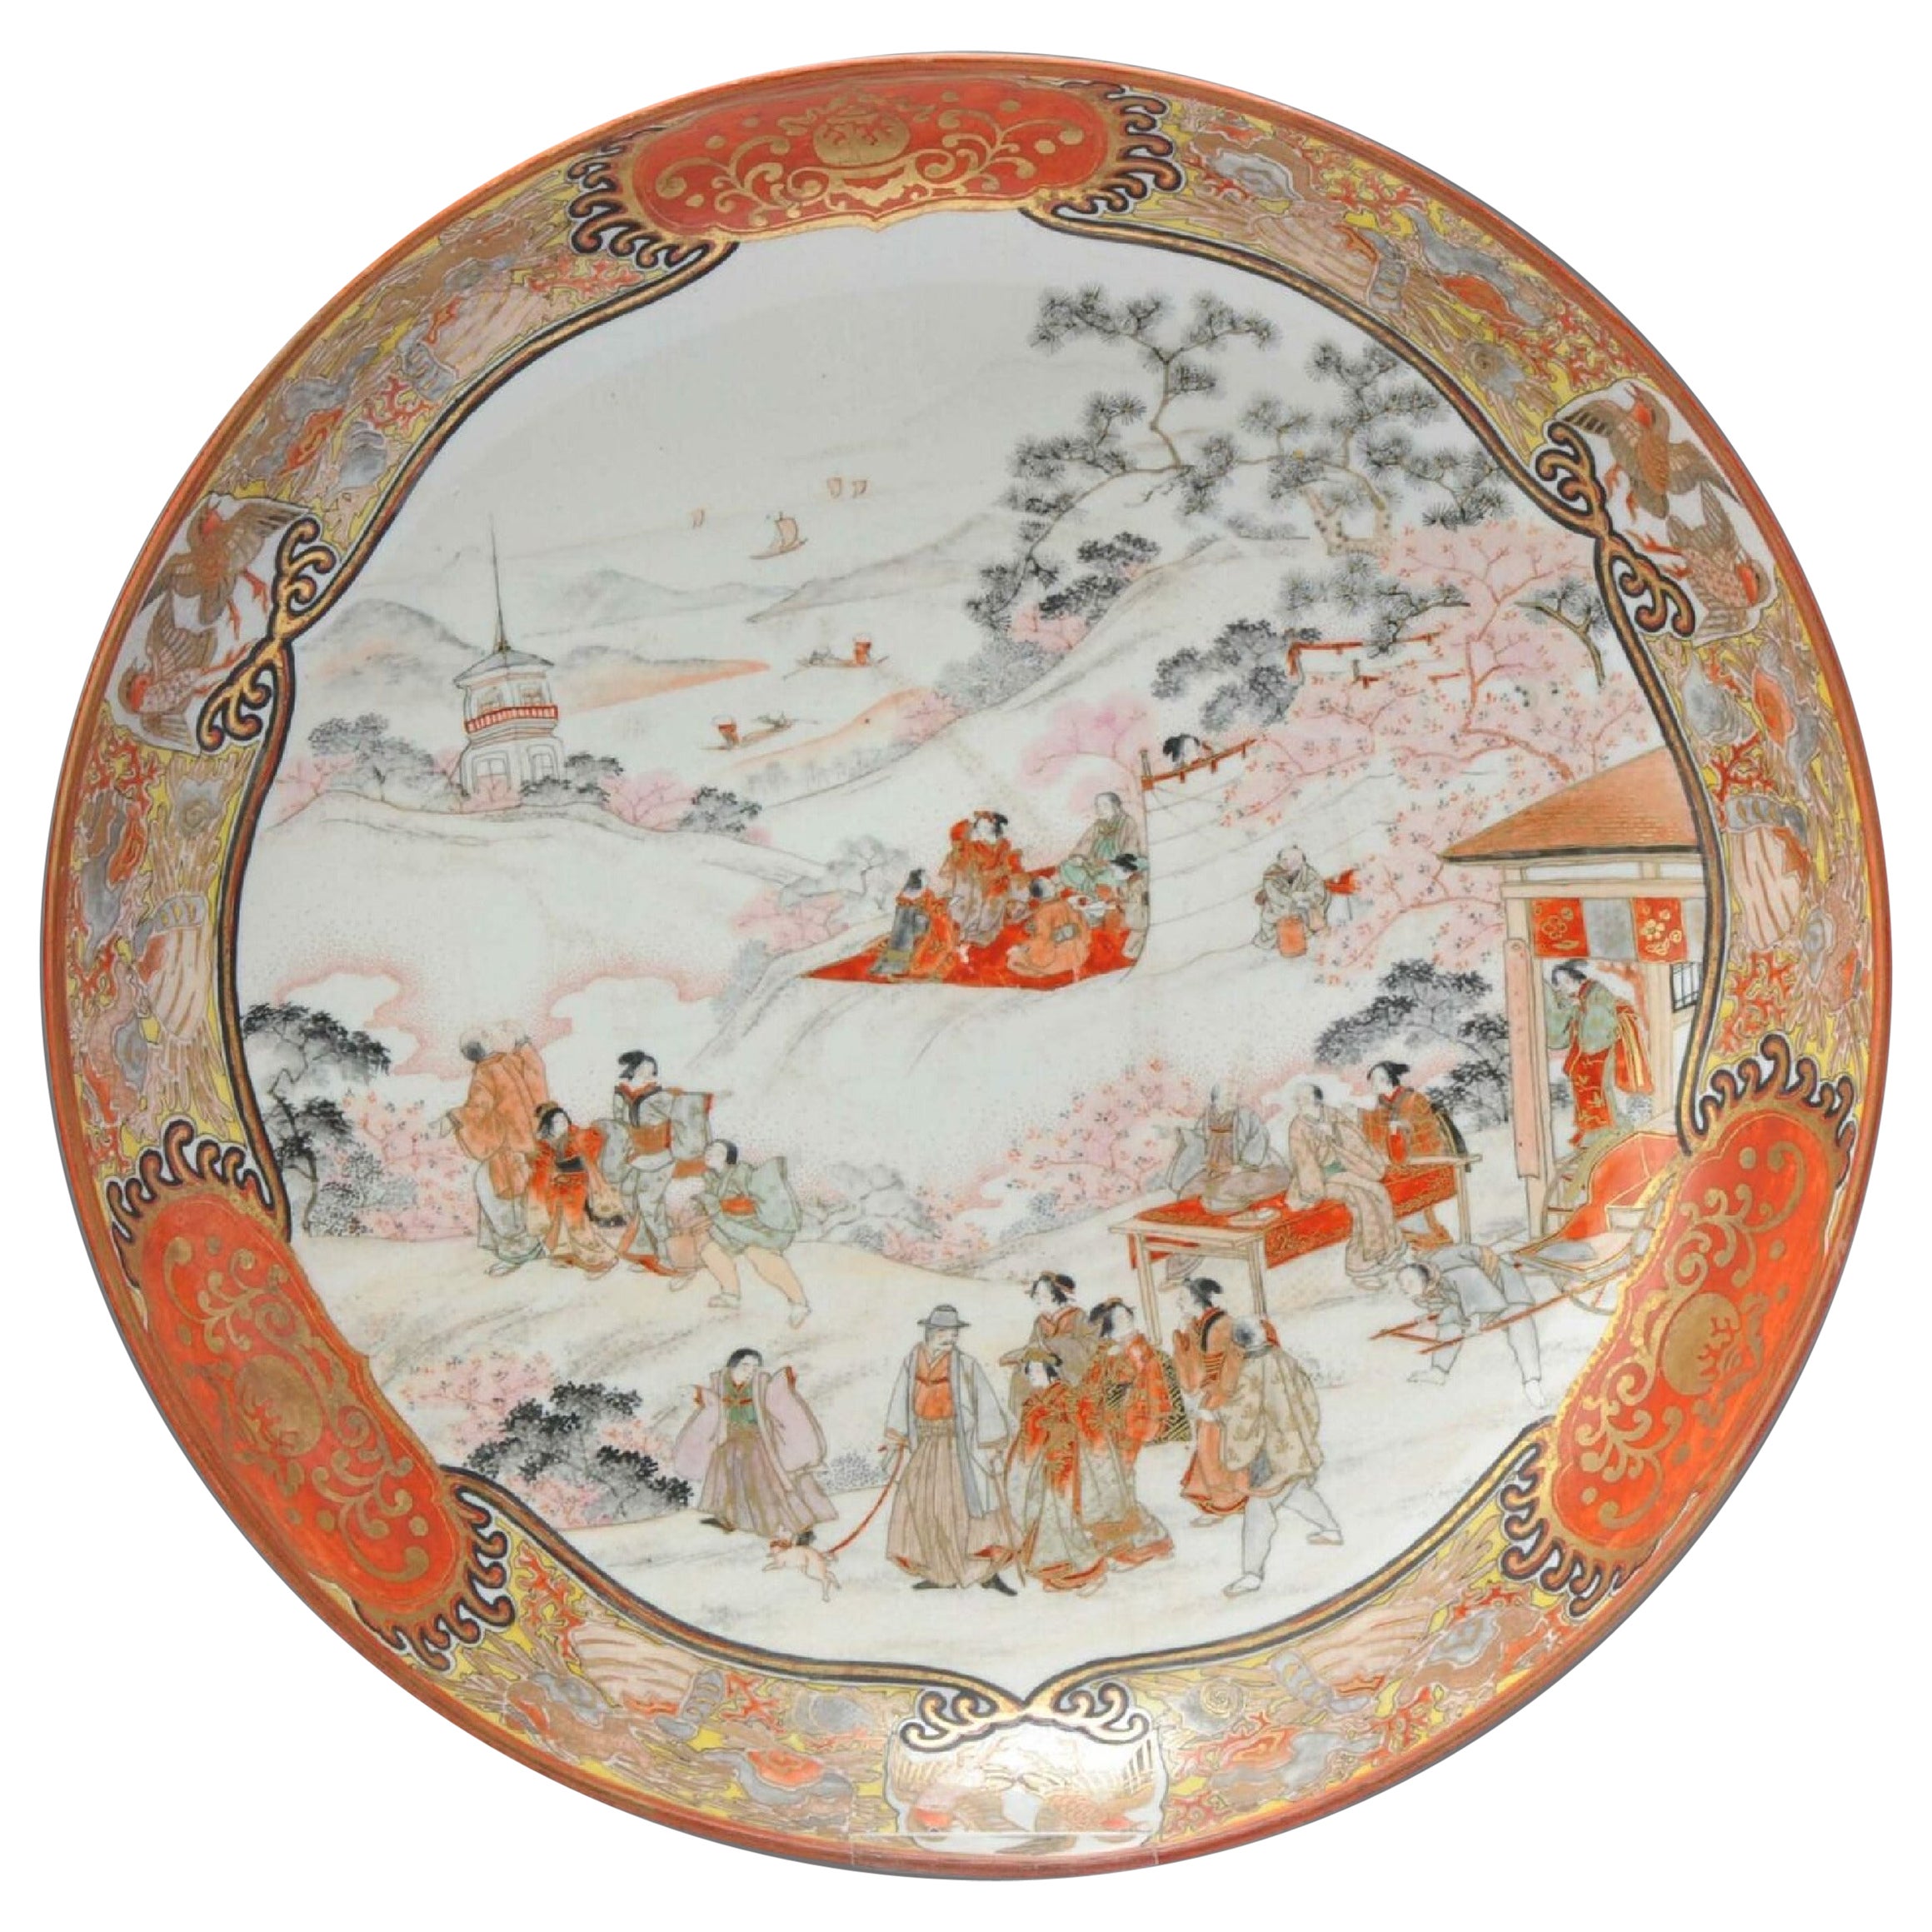 Assiette de présentation japonaise ancienne Edo/Meiji Kutani avec scène de paysage figurative, 19e siècle